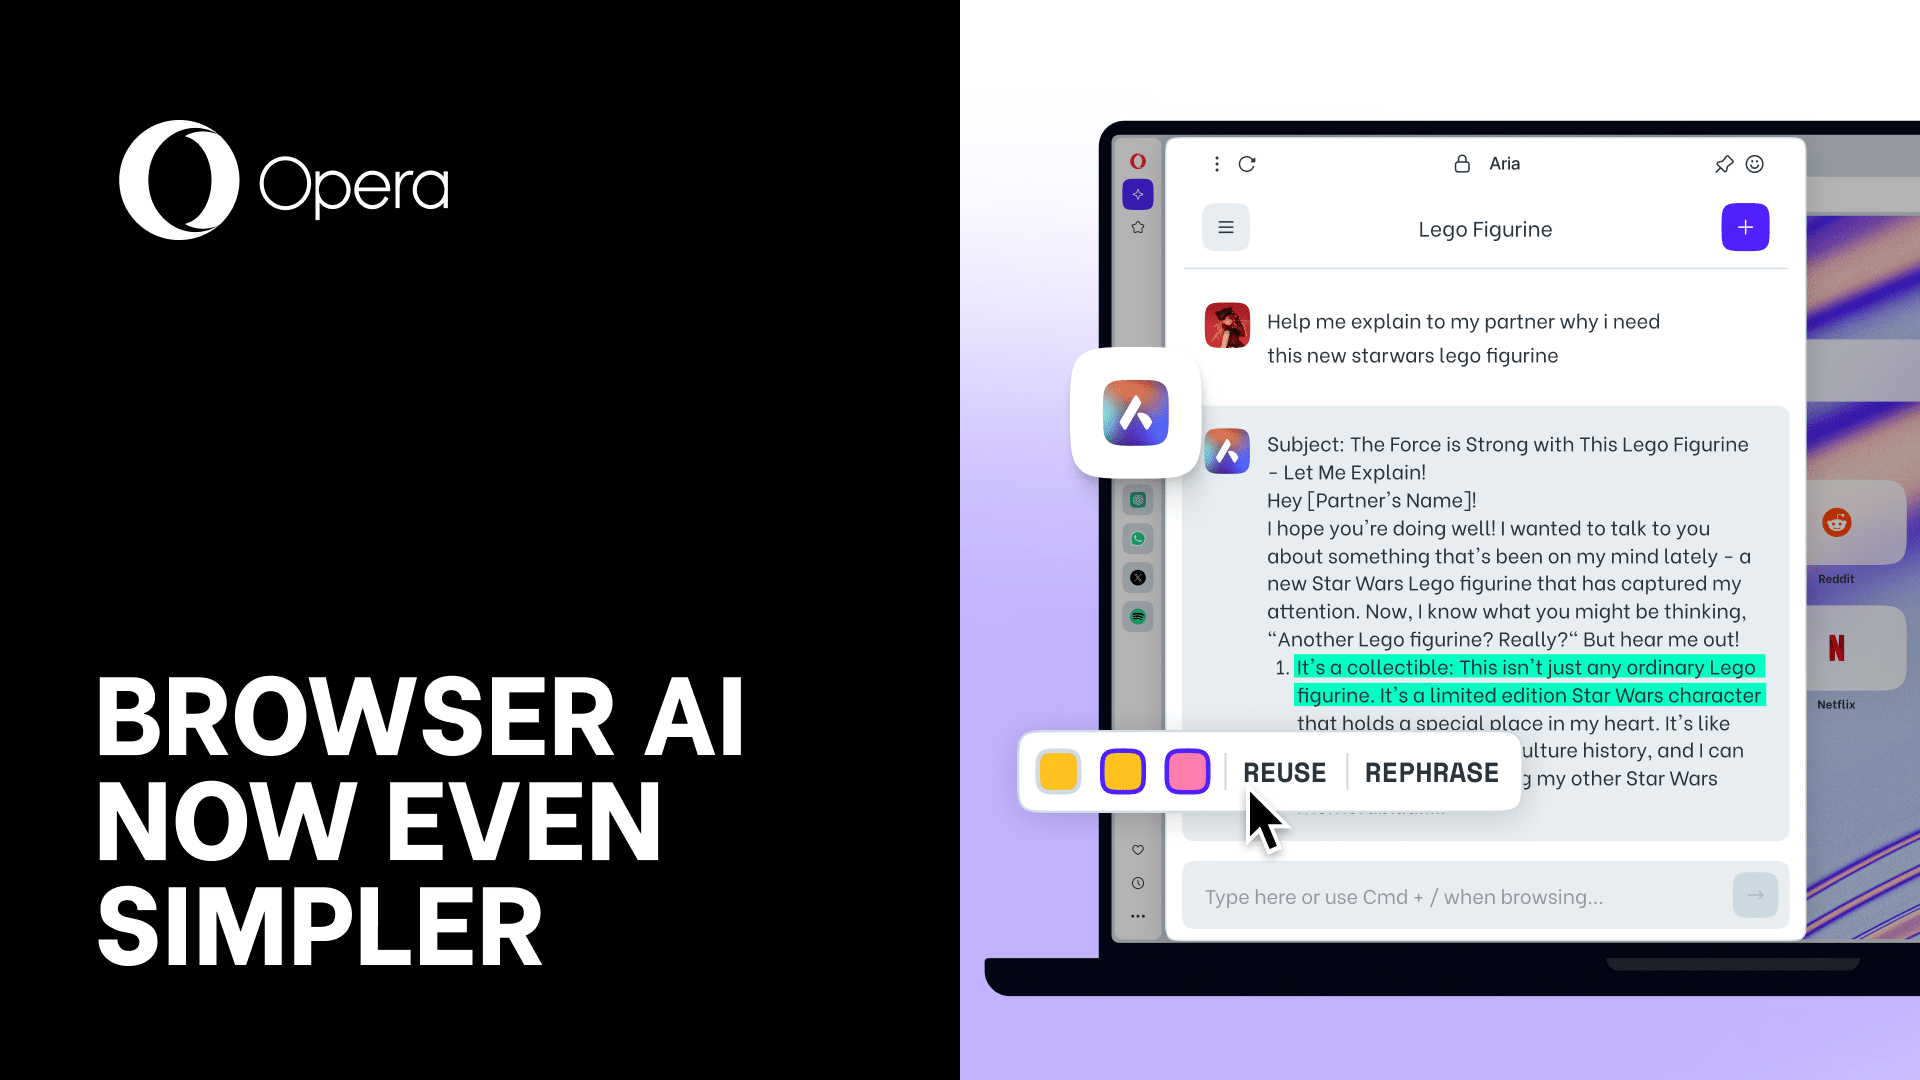 Opera One dévoile une mise à jour majeure pour Aria, son IA intégrée